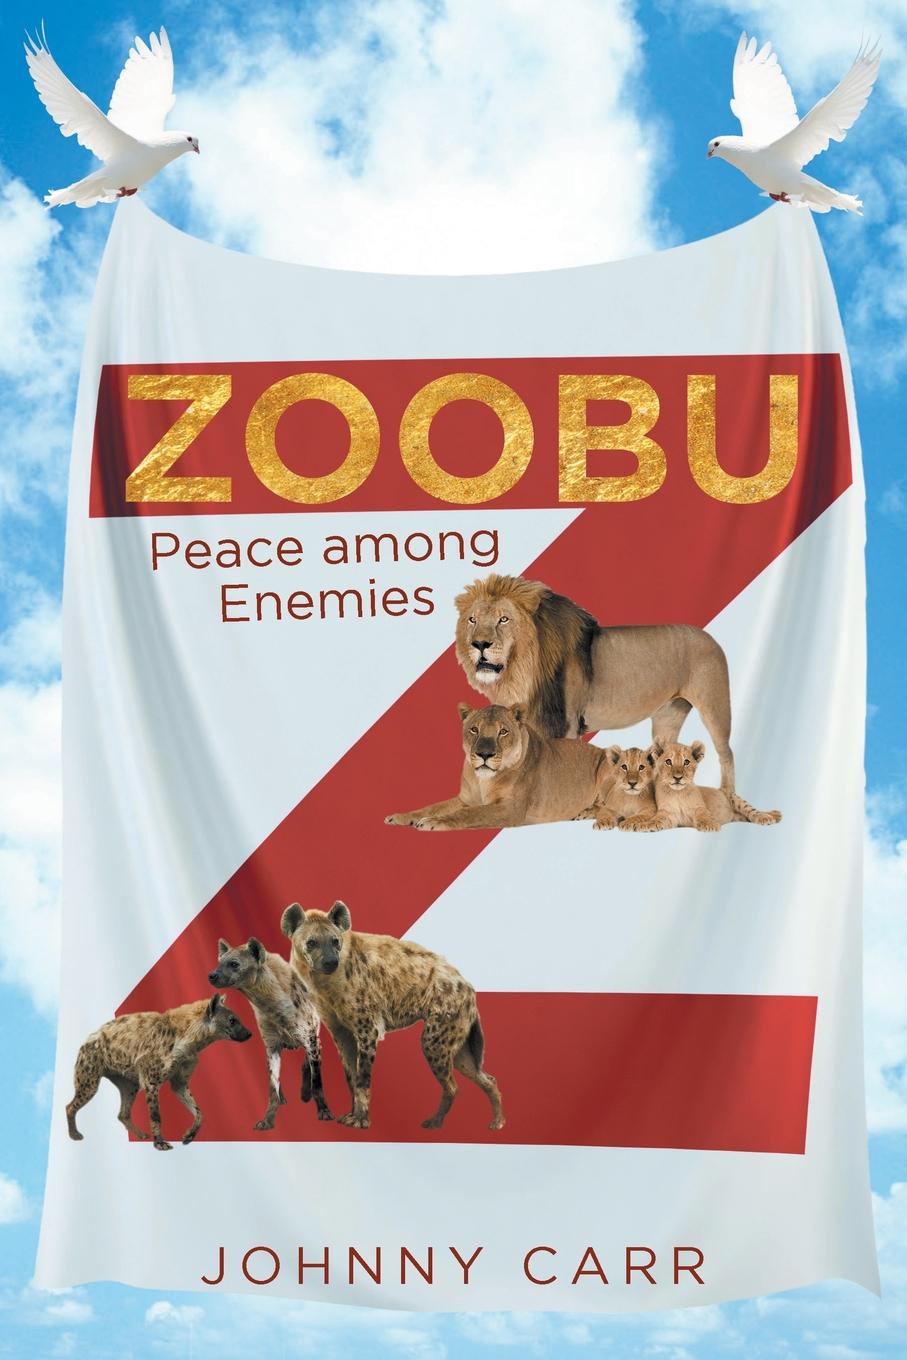 Zoobu. Peace among Enemies